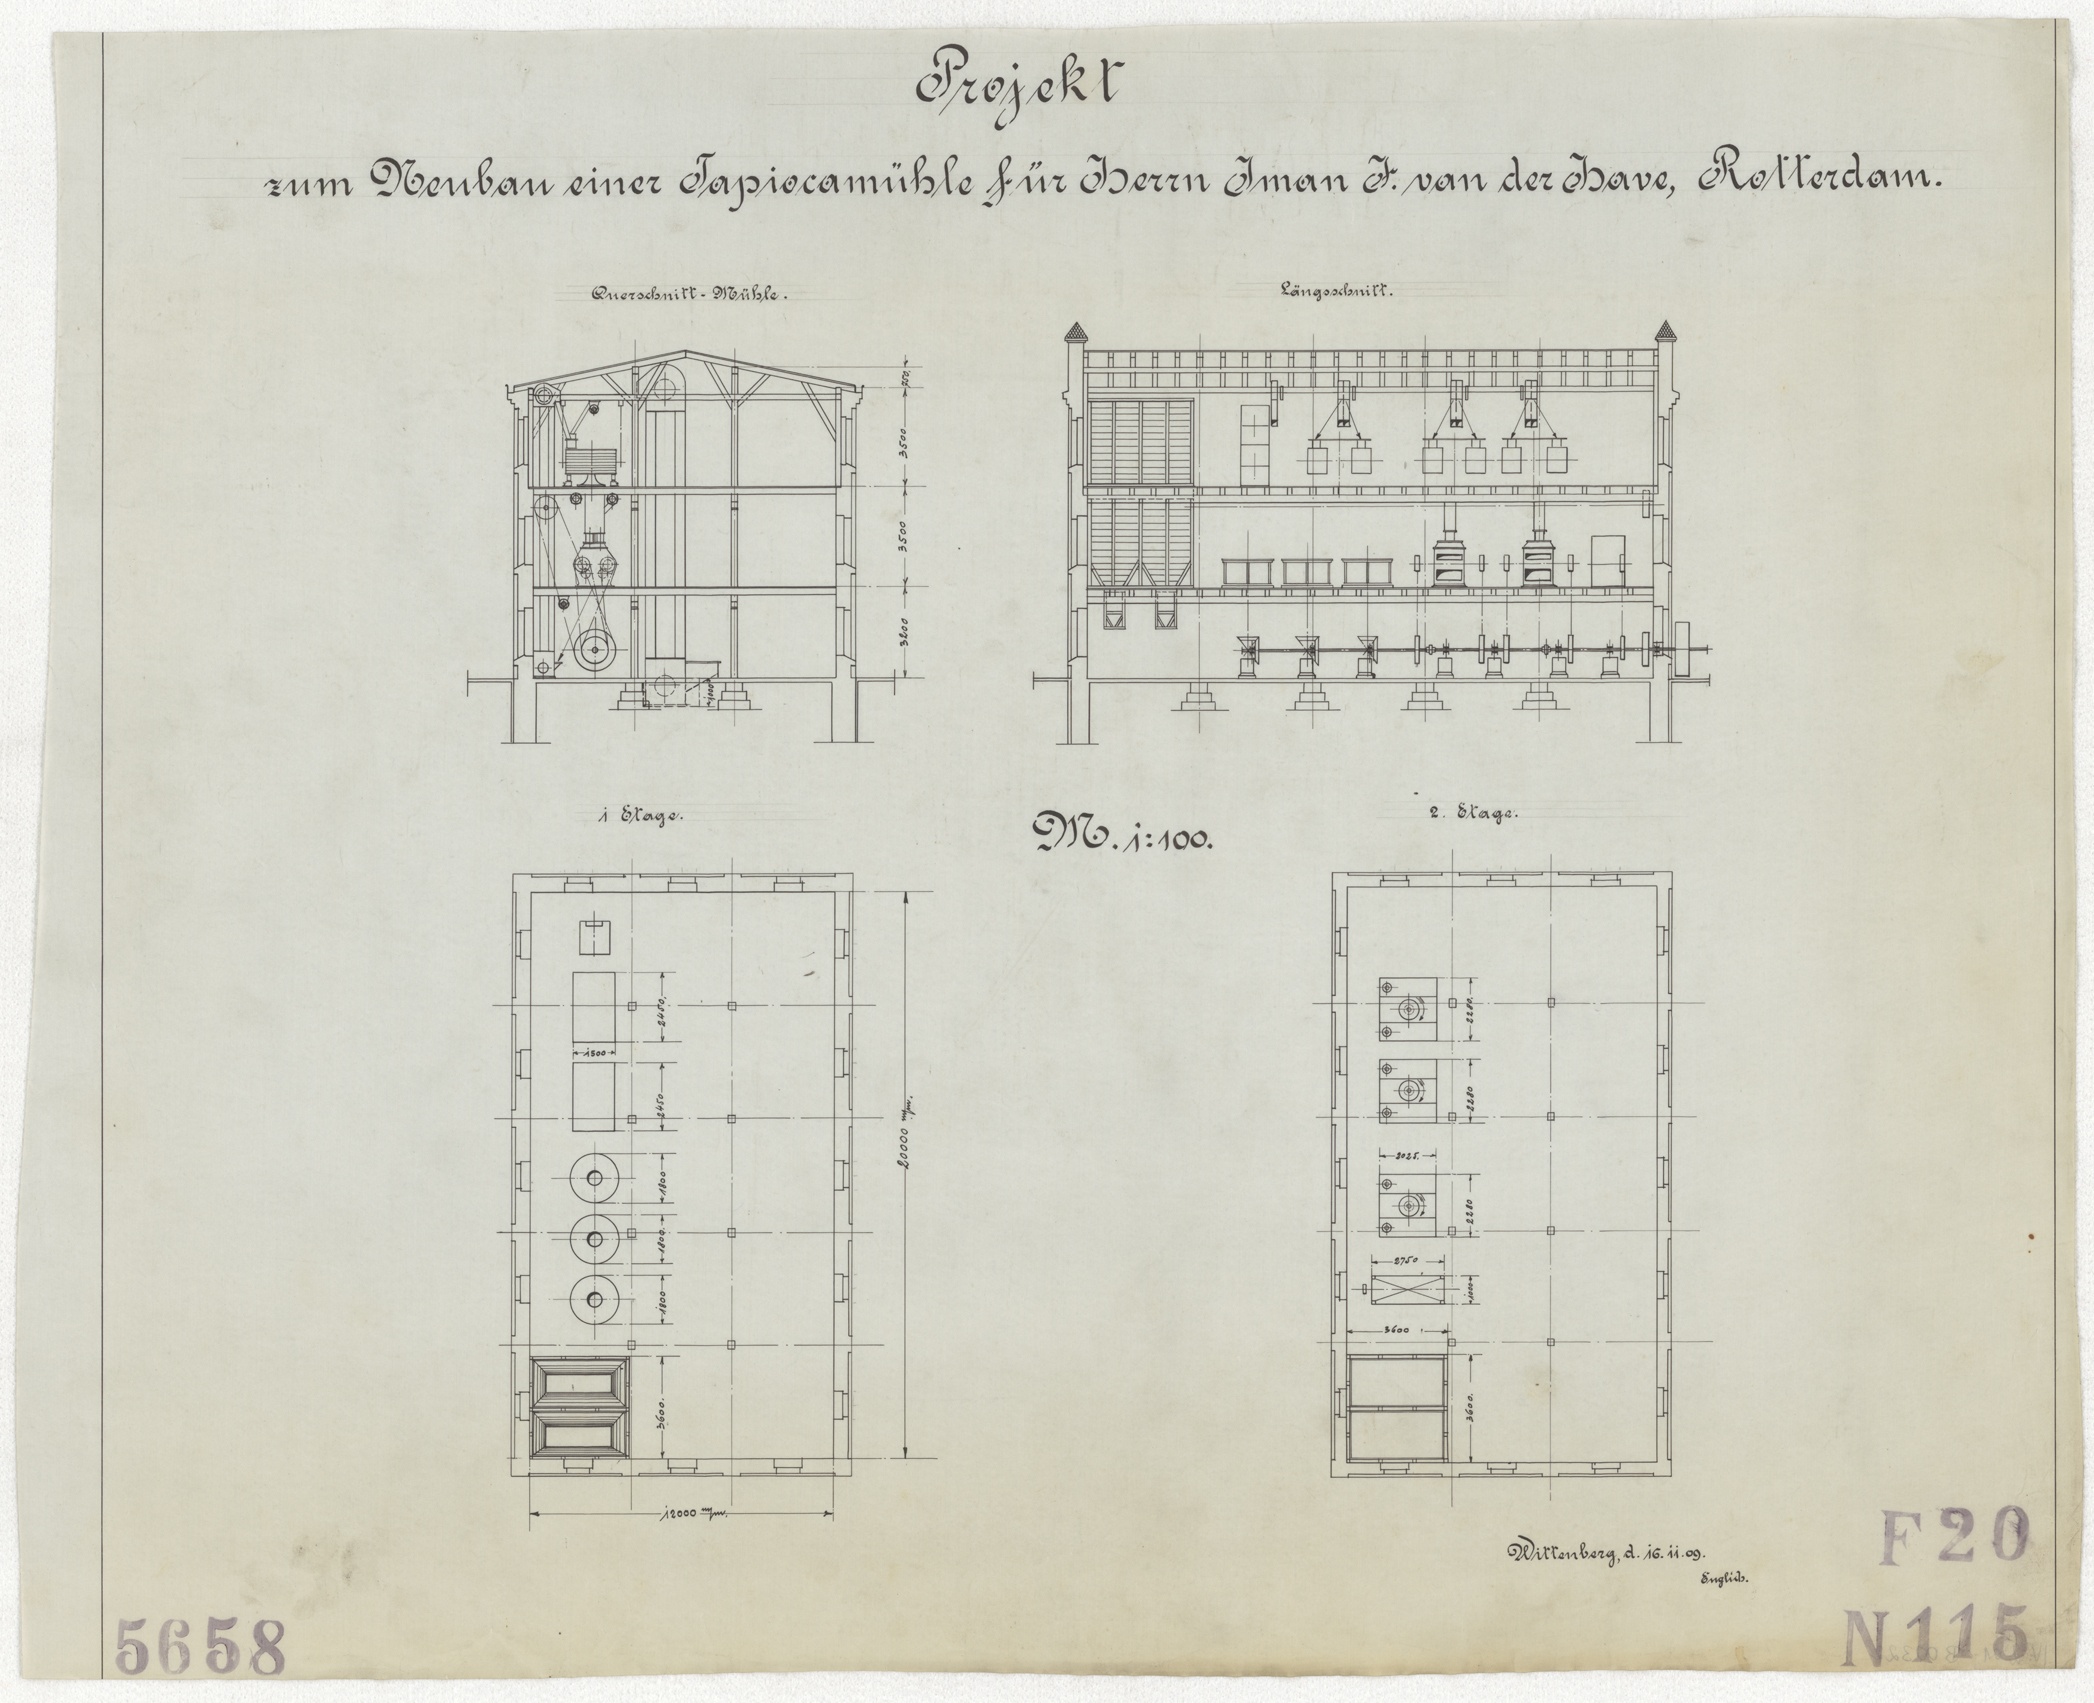 Technische Zeichnung : Projekt zum Neubau einer Tapiokamühle für Herrn Iman I. van der Have, Rotterdam (Stiftung Deutsches Technikmuseum Berlin CC BY-SA)